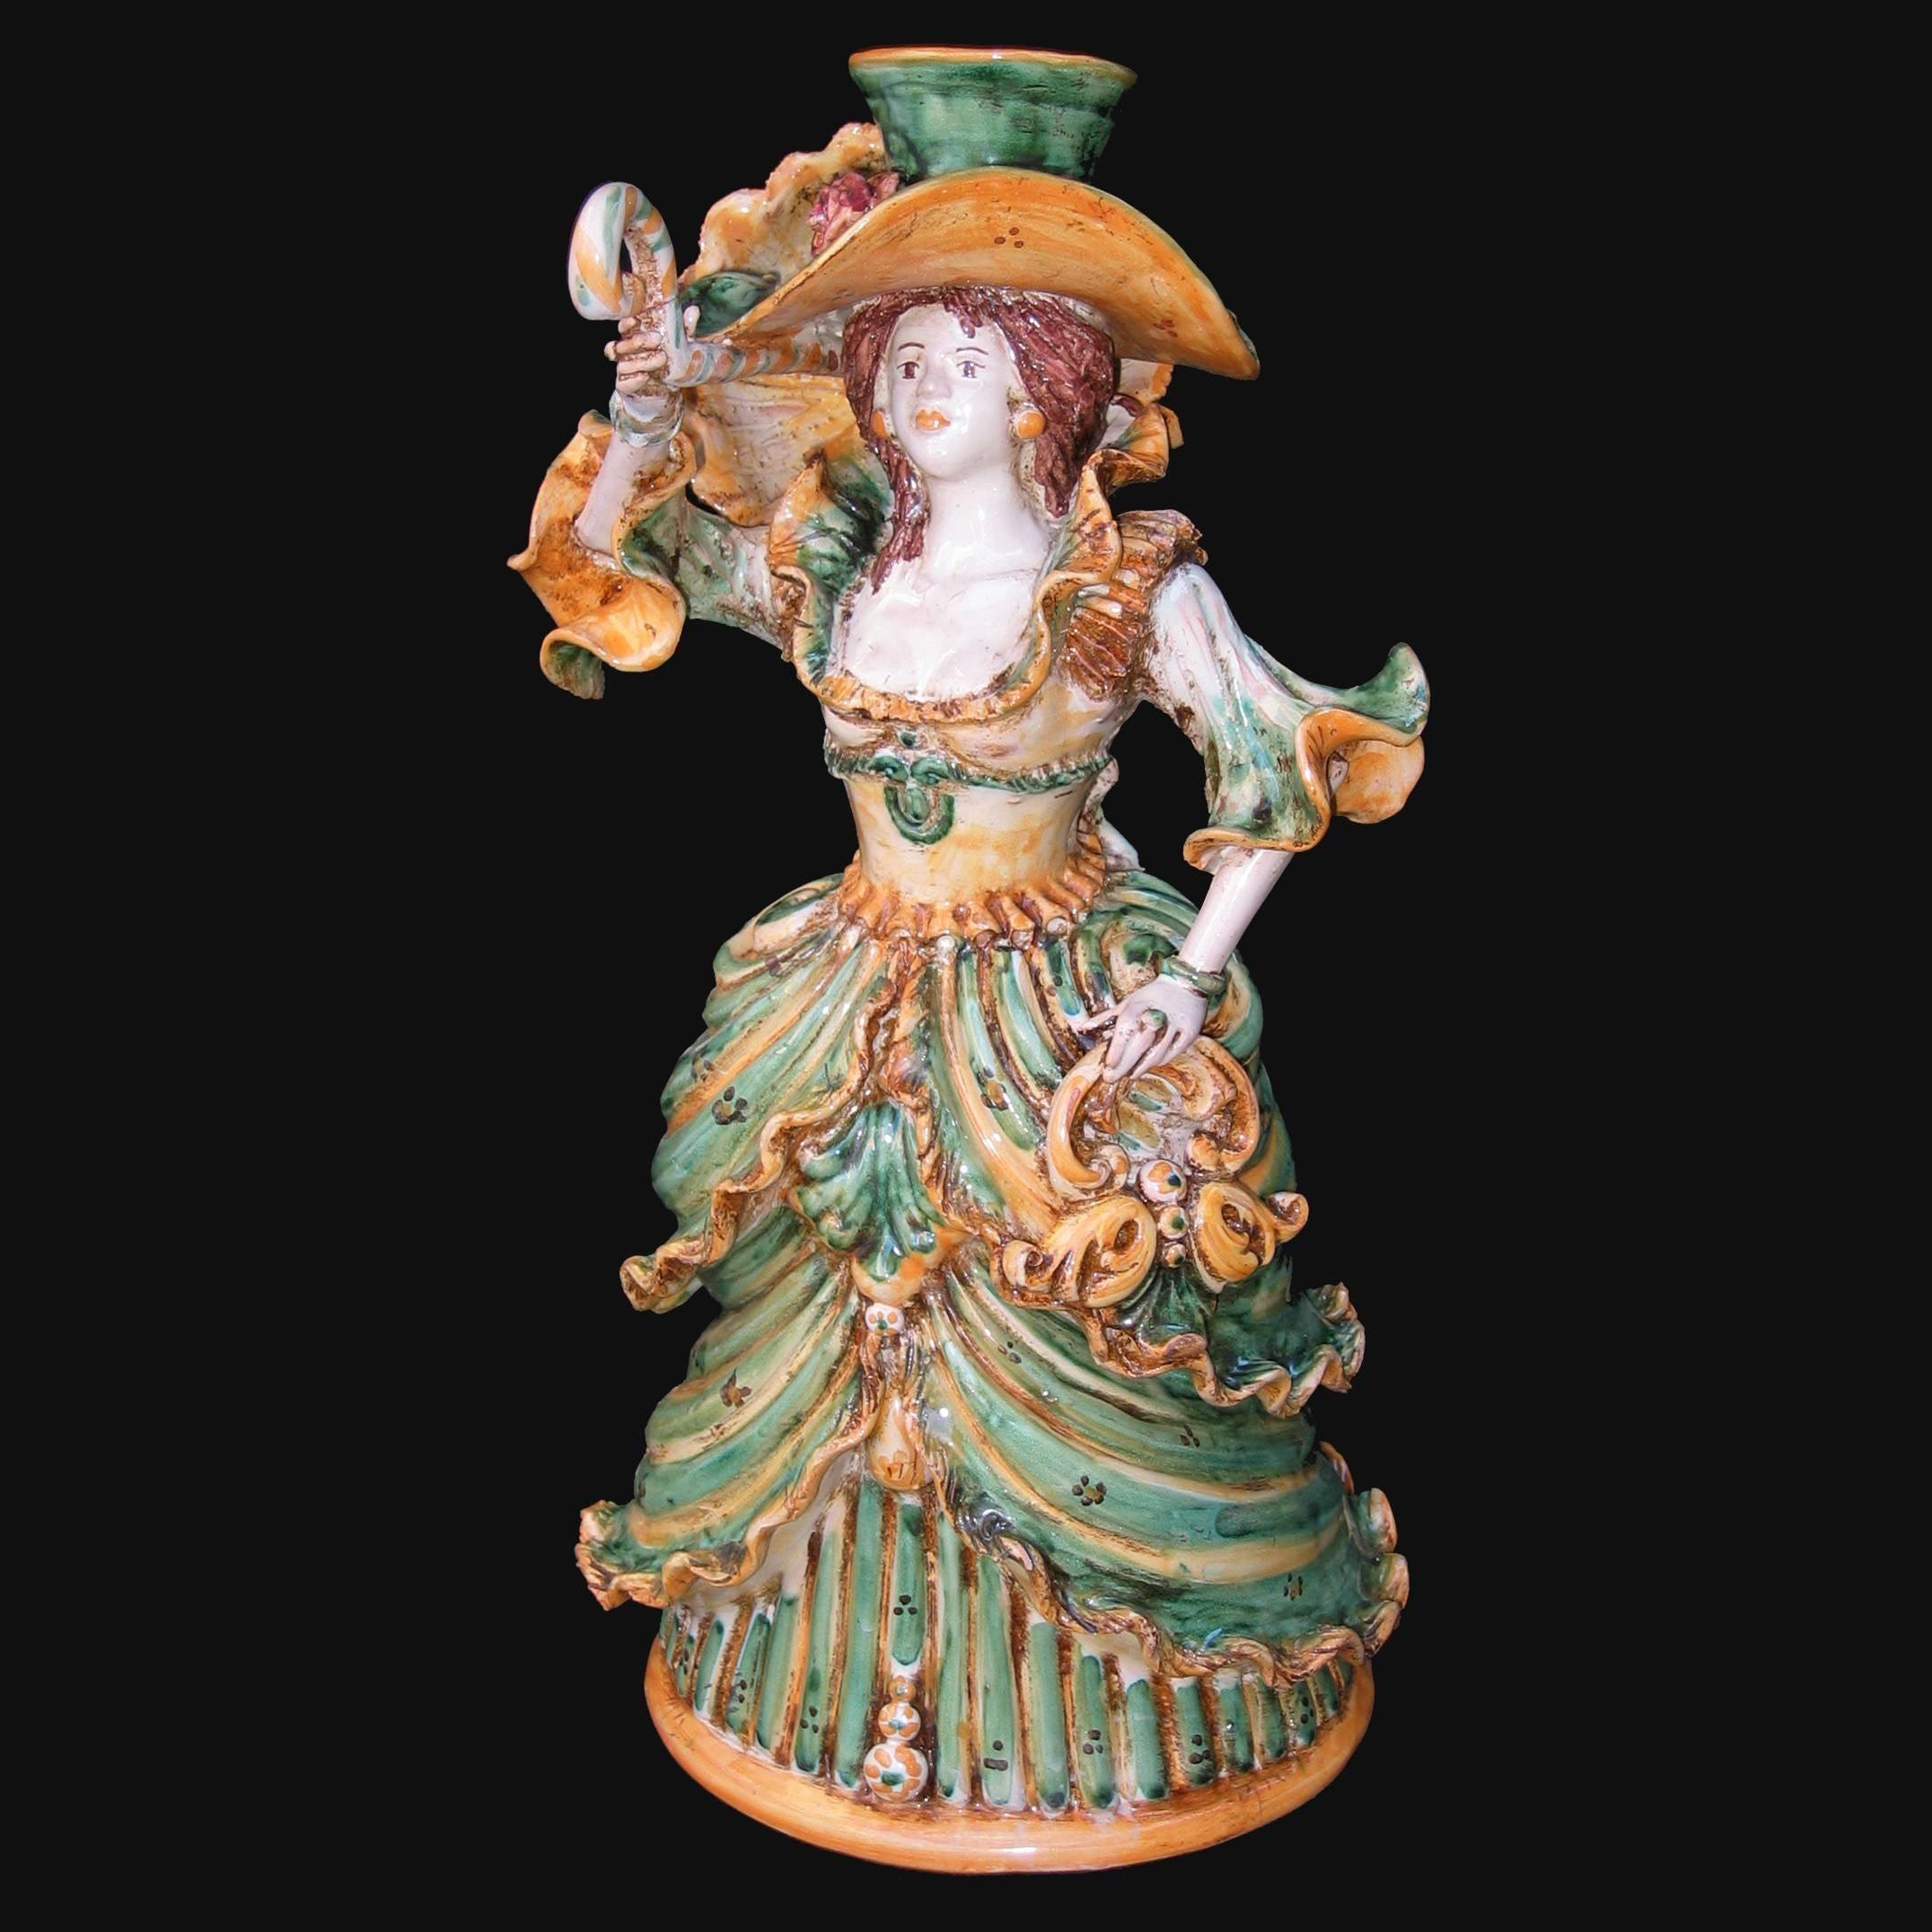 Lumiera media femmina h 34 verde/arancio - Modellato a Mano - Ceramiche di Caltagirone Sofia